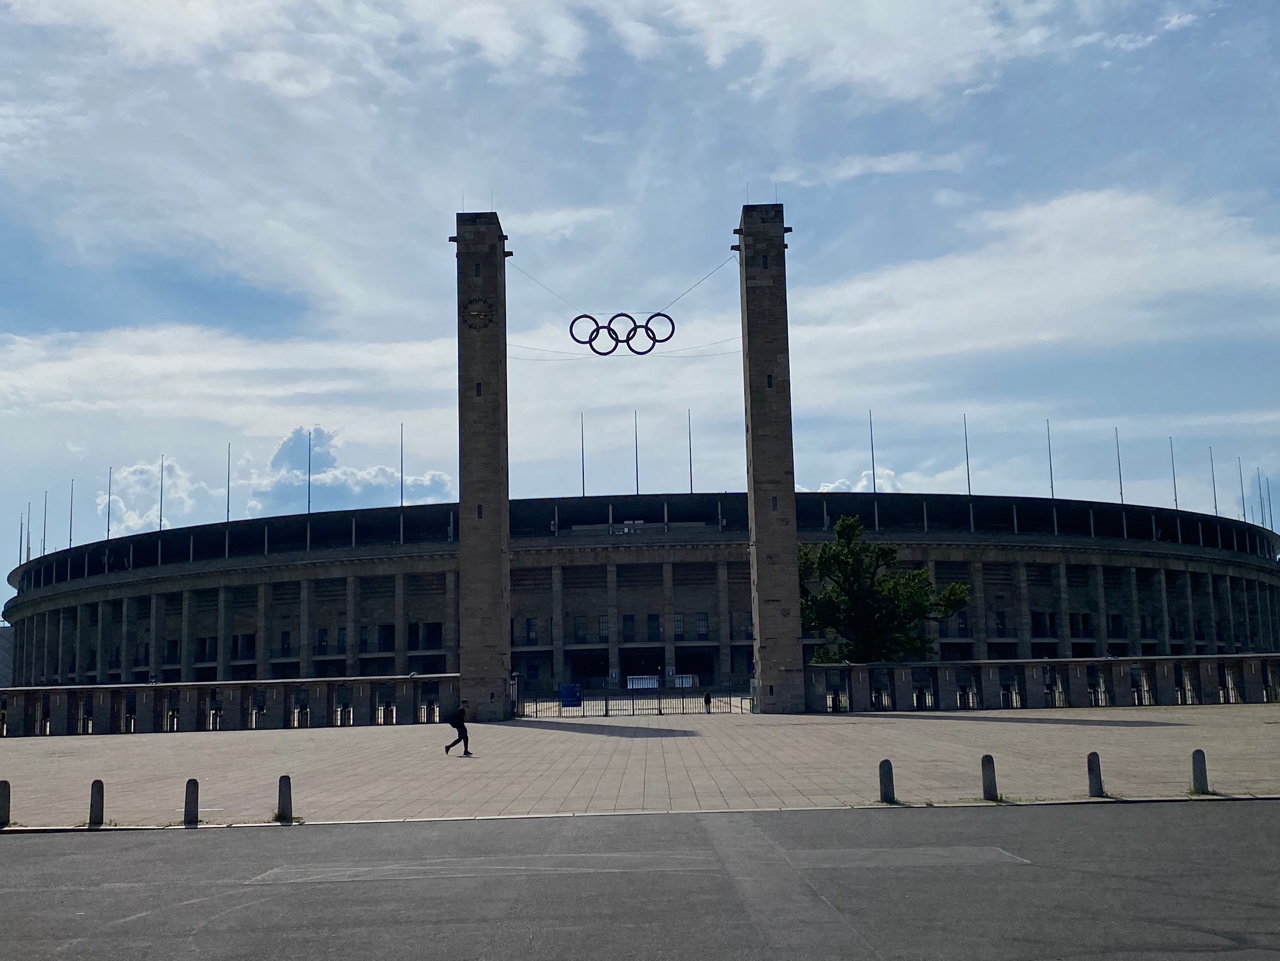 1936년 올림픽이 열렸던 베를린 올림픽 주경기장(올림피아슈타디온 베를린). 지금은 분데스리가 헤르타 베를린의 홈 경기장으로 사용되고 있다.